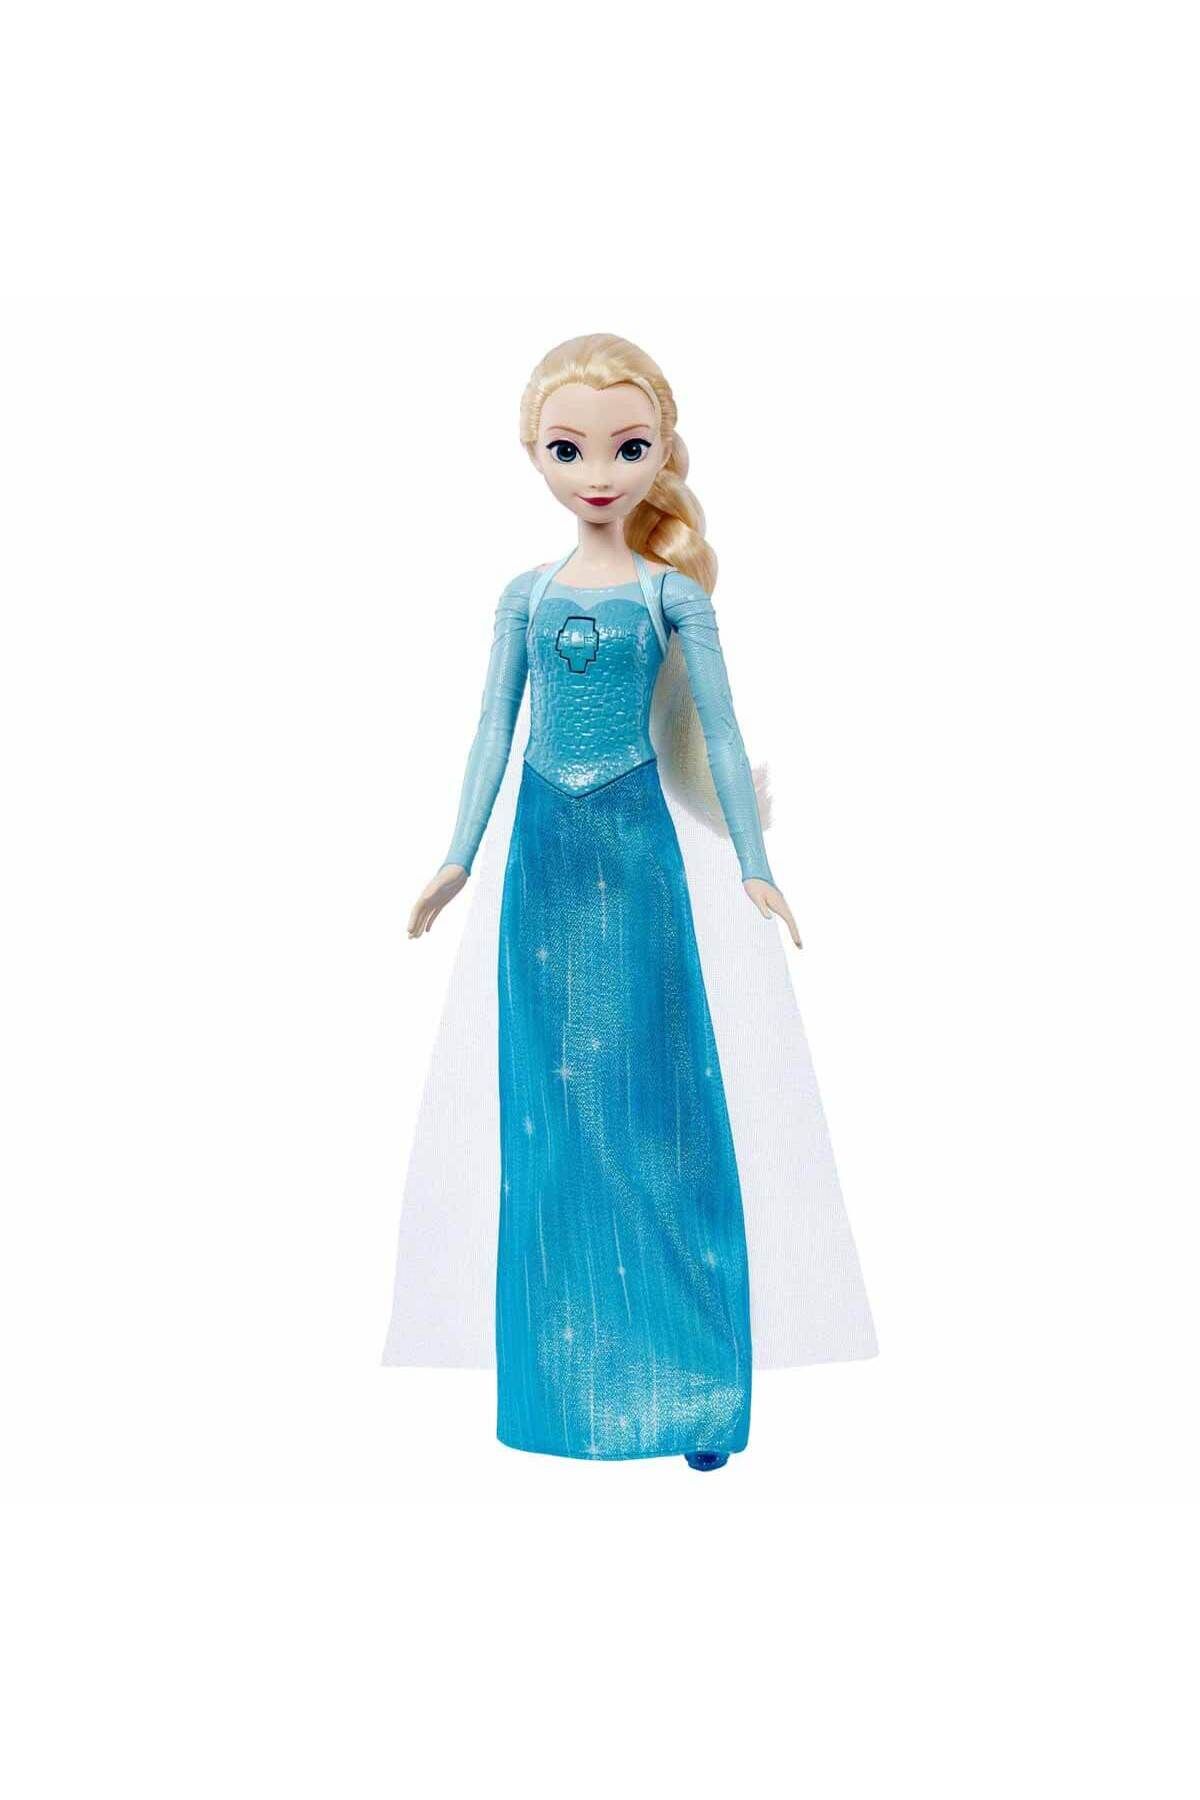 Hasbro Disney Karlar Ülkesi Şarkı Söyleyen Bebekler HLW55 - Elsa